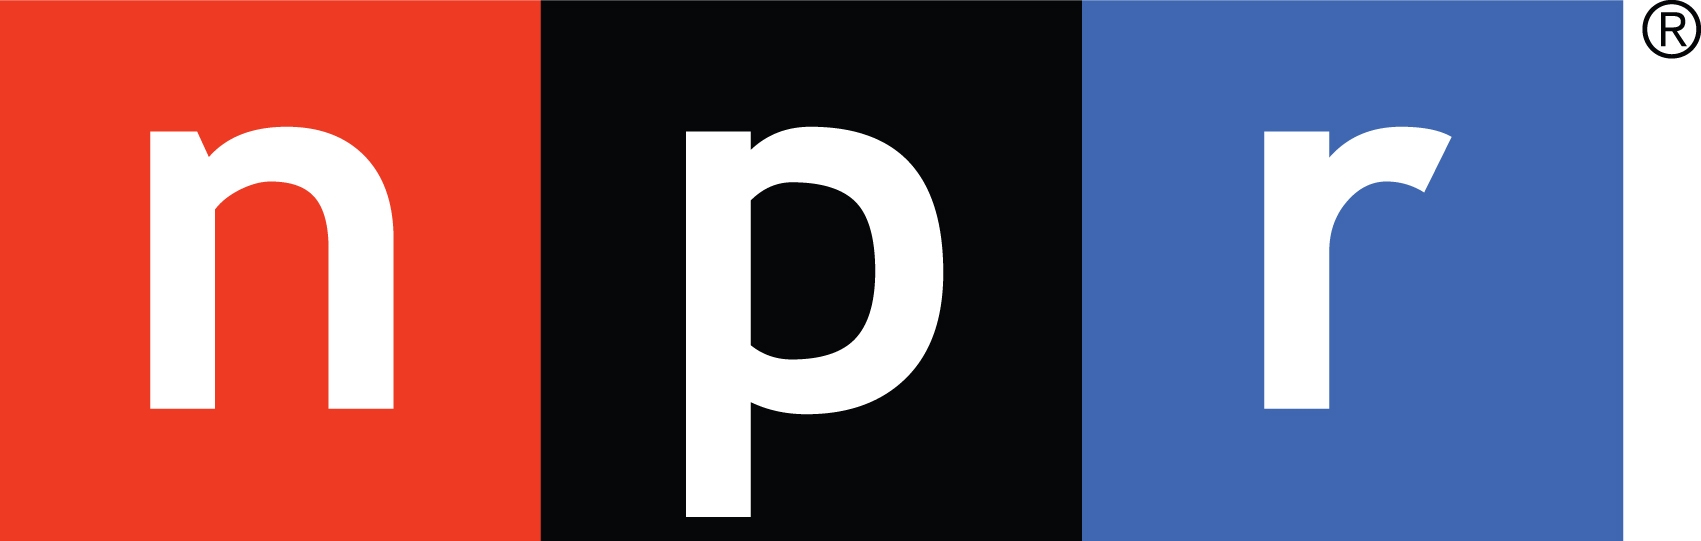 NPR 徽标